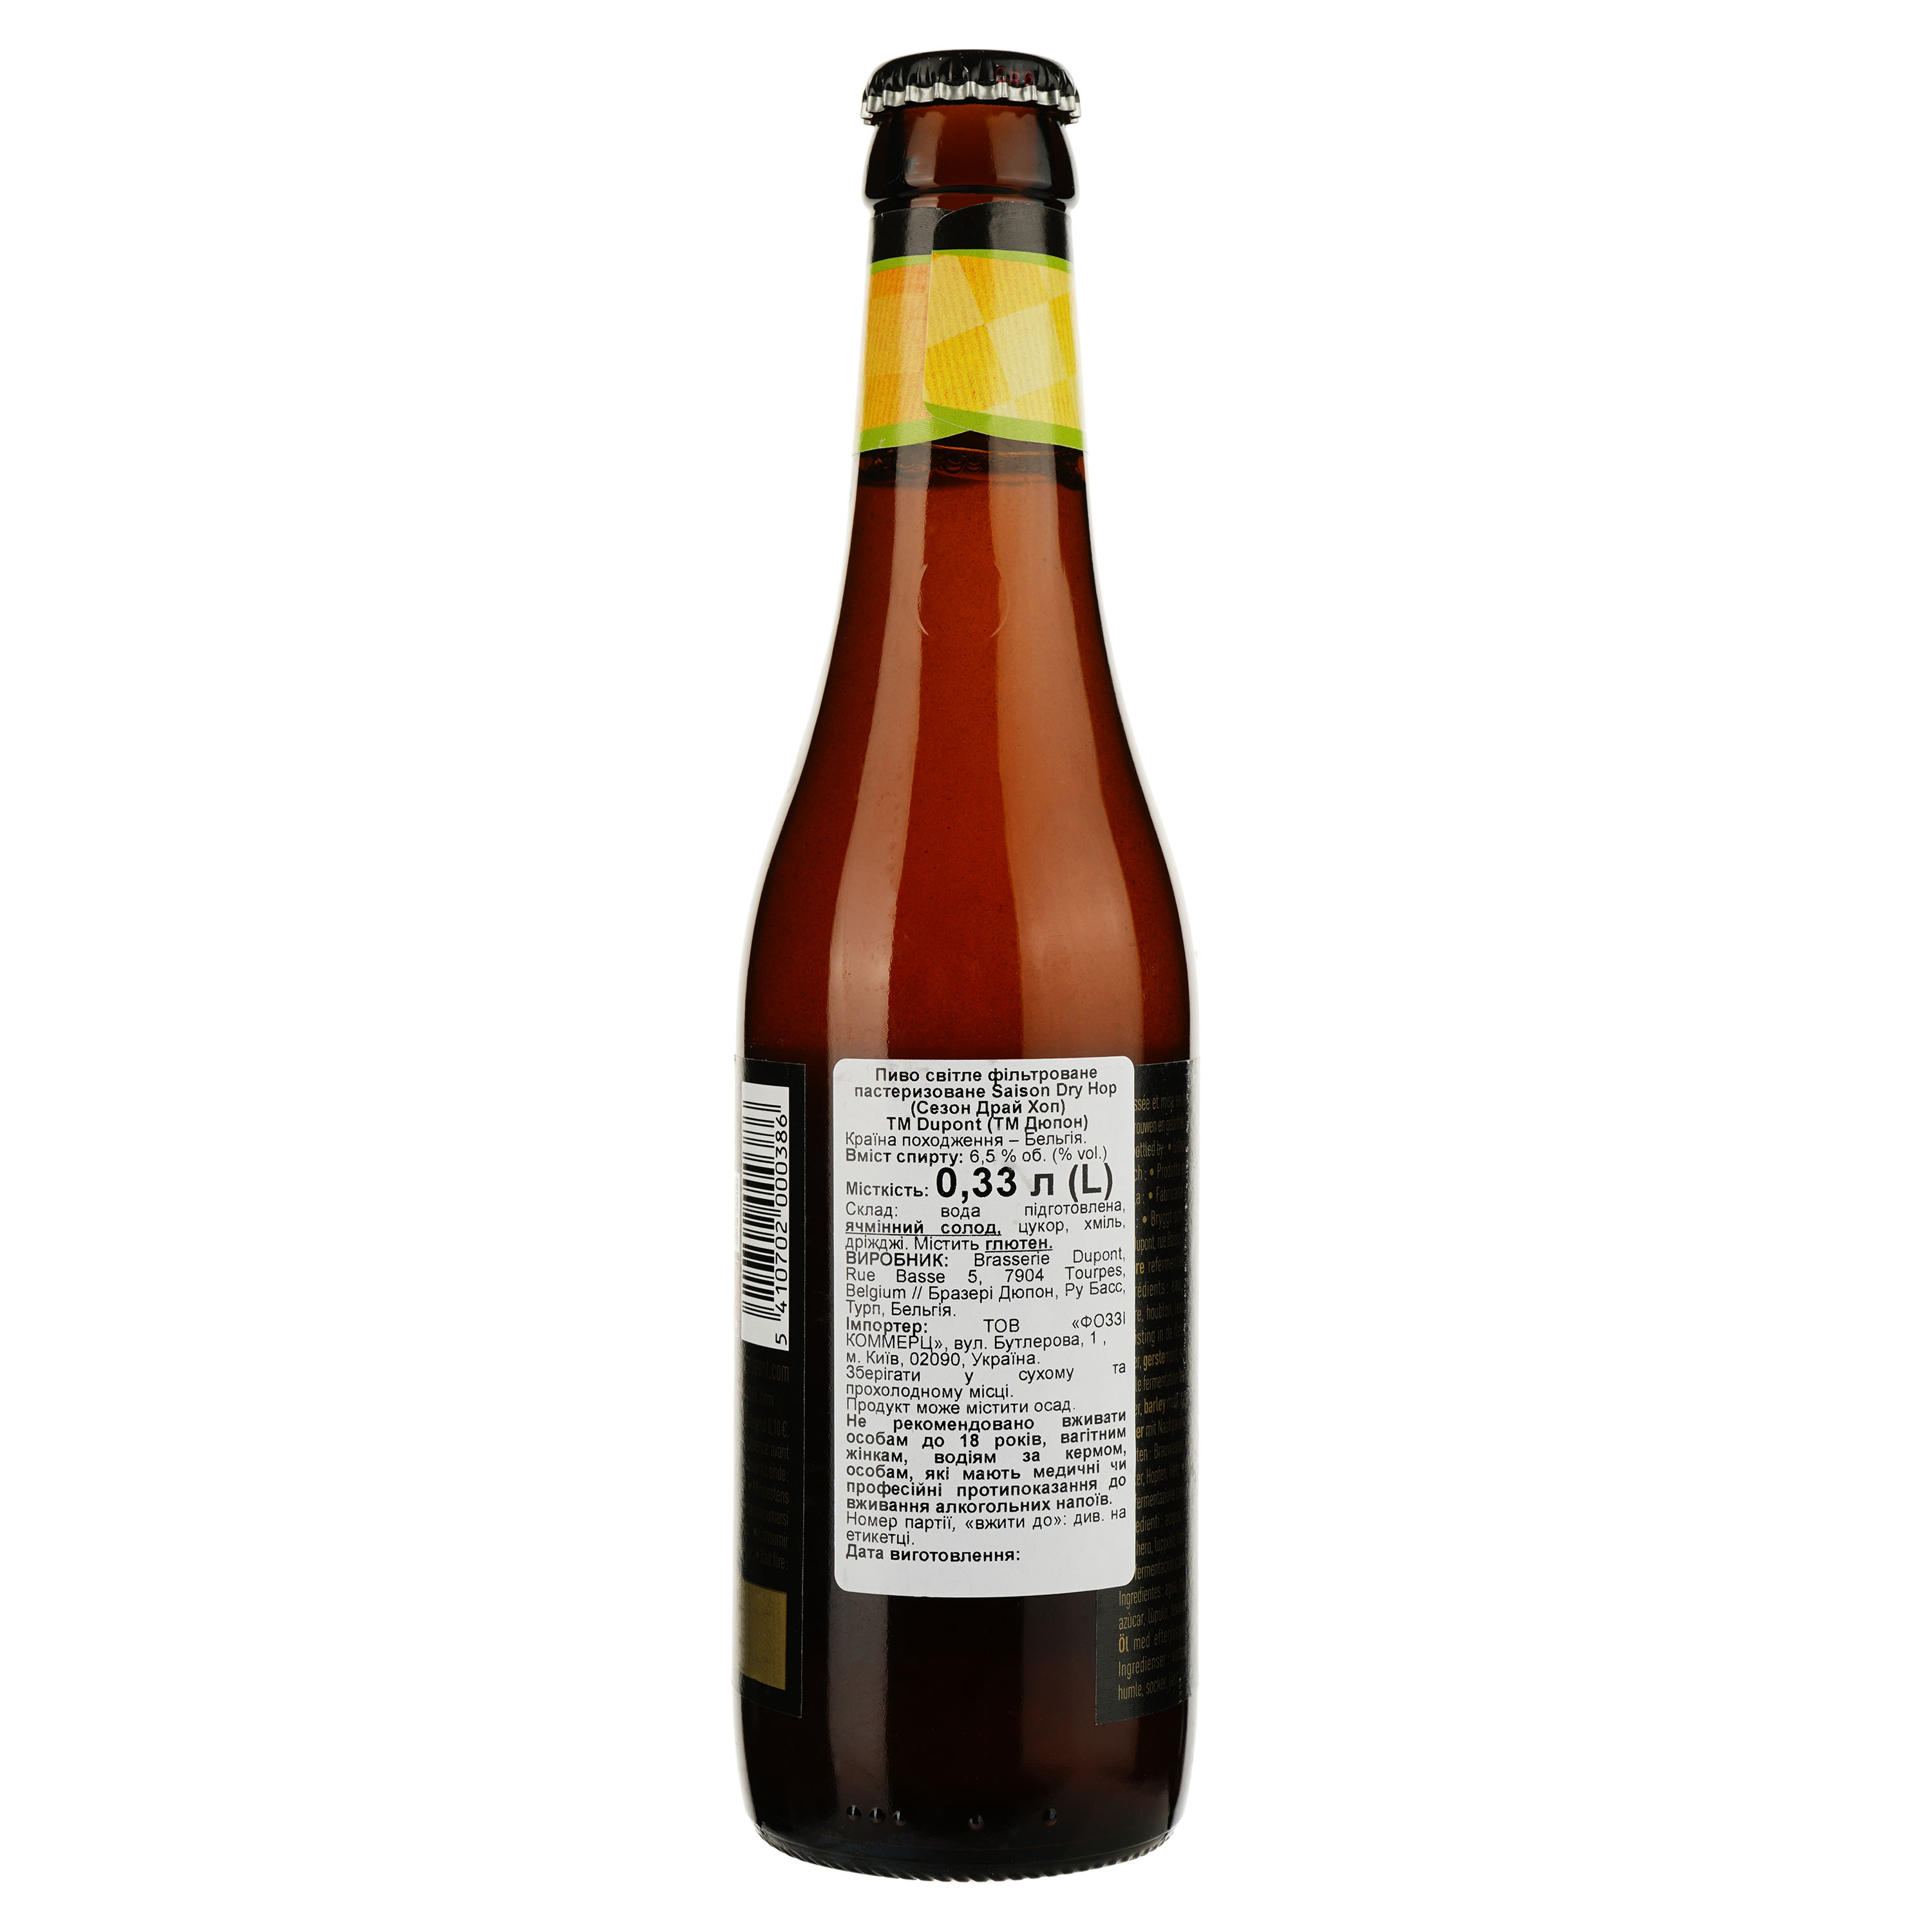 Пиво Brasserie Dupont Saison Dry Hopping светлое 6.5% 0.33 л - фото 2